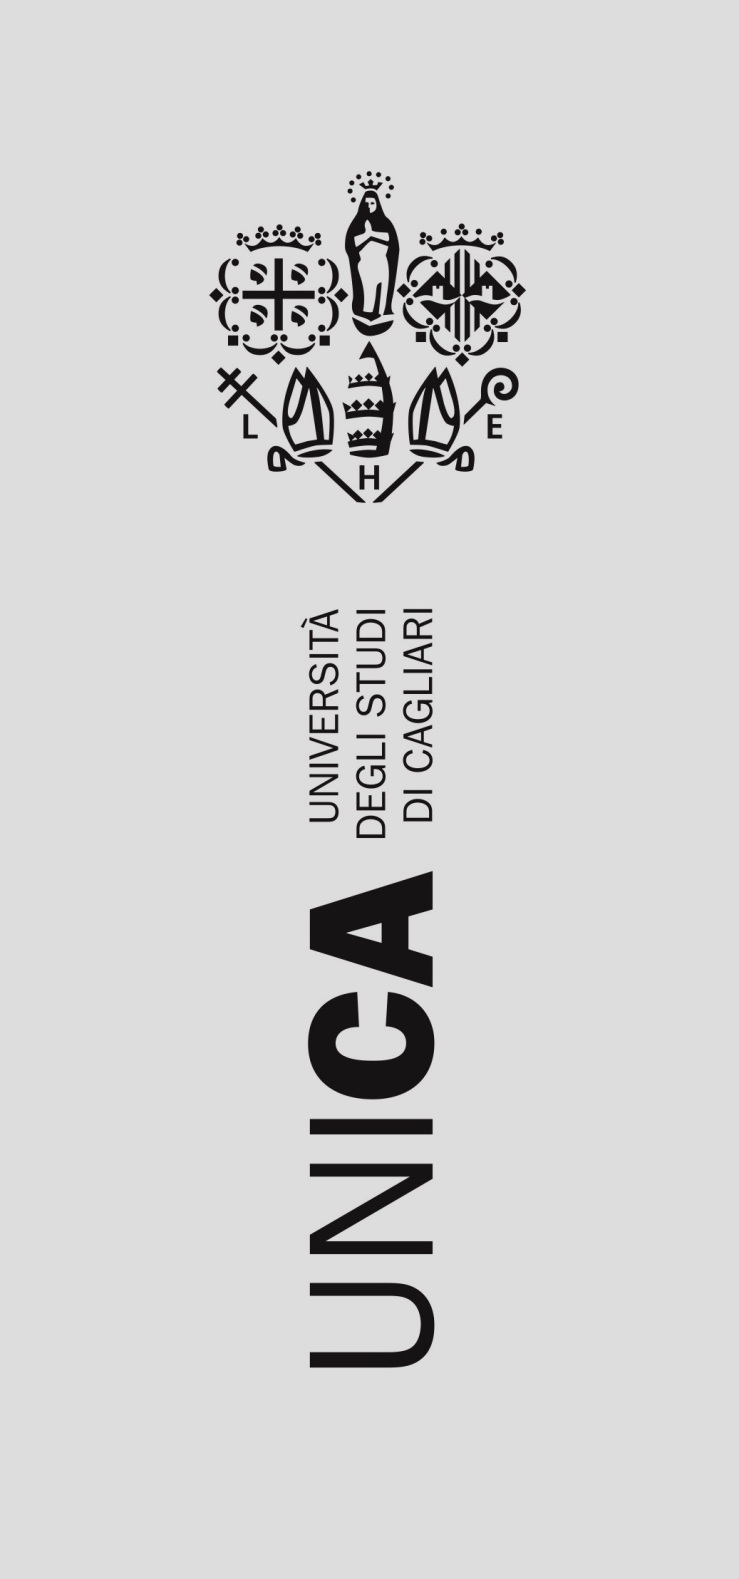 nuovo logo unica 2017 grigio